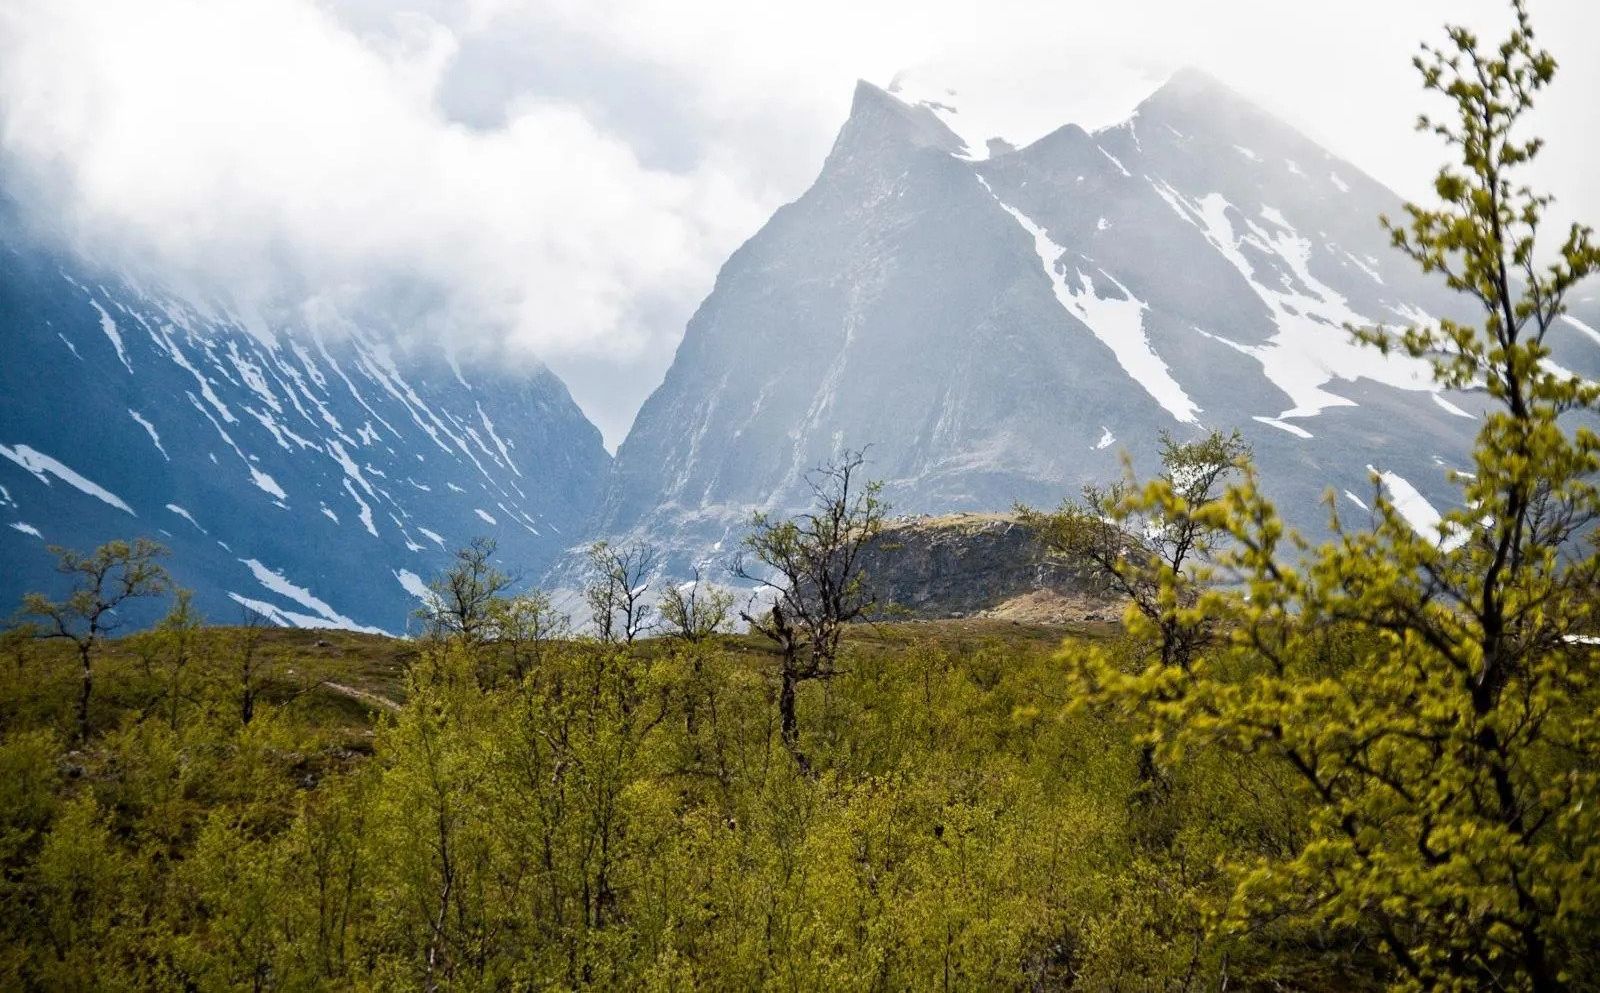 Kebnekaise Valley in arctic Sweden